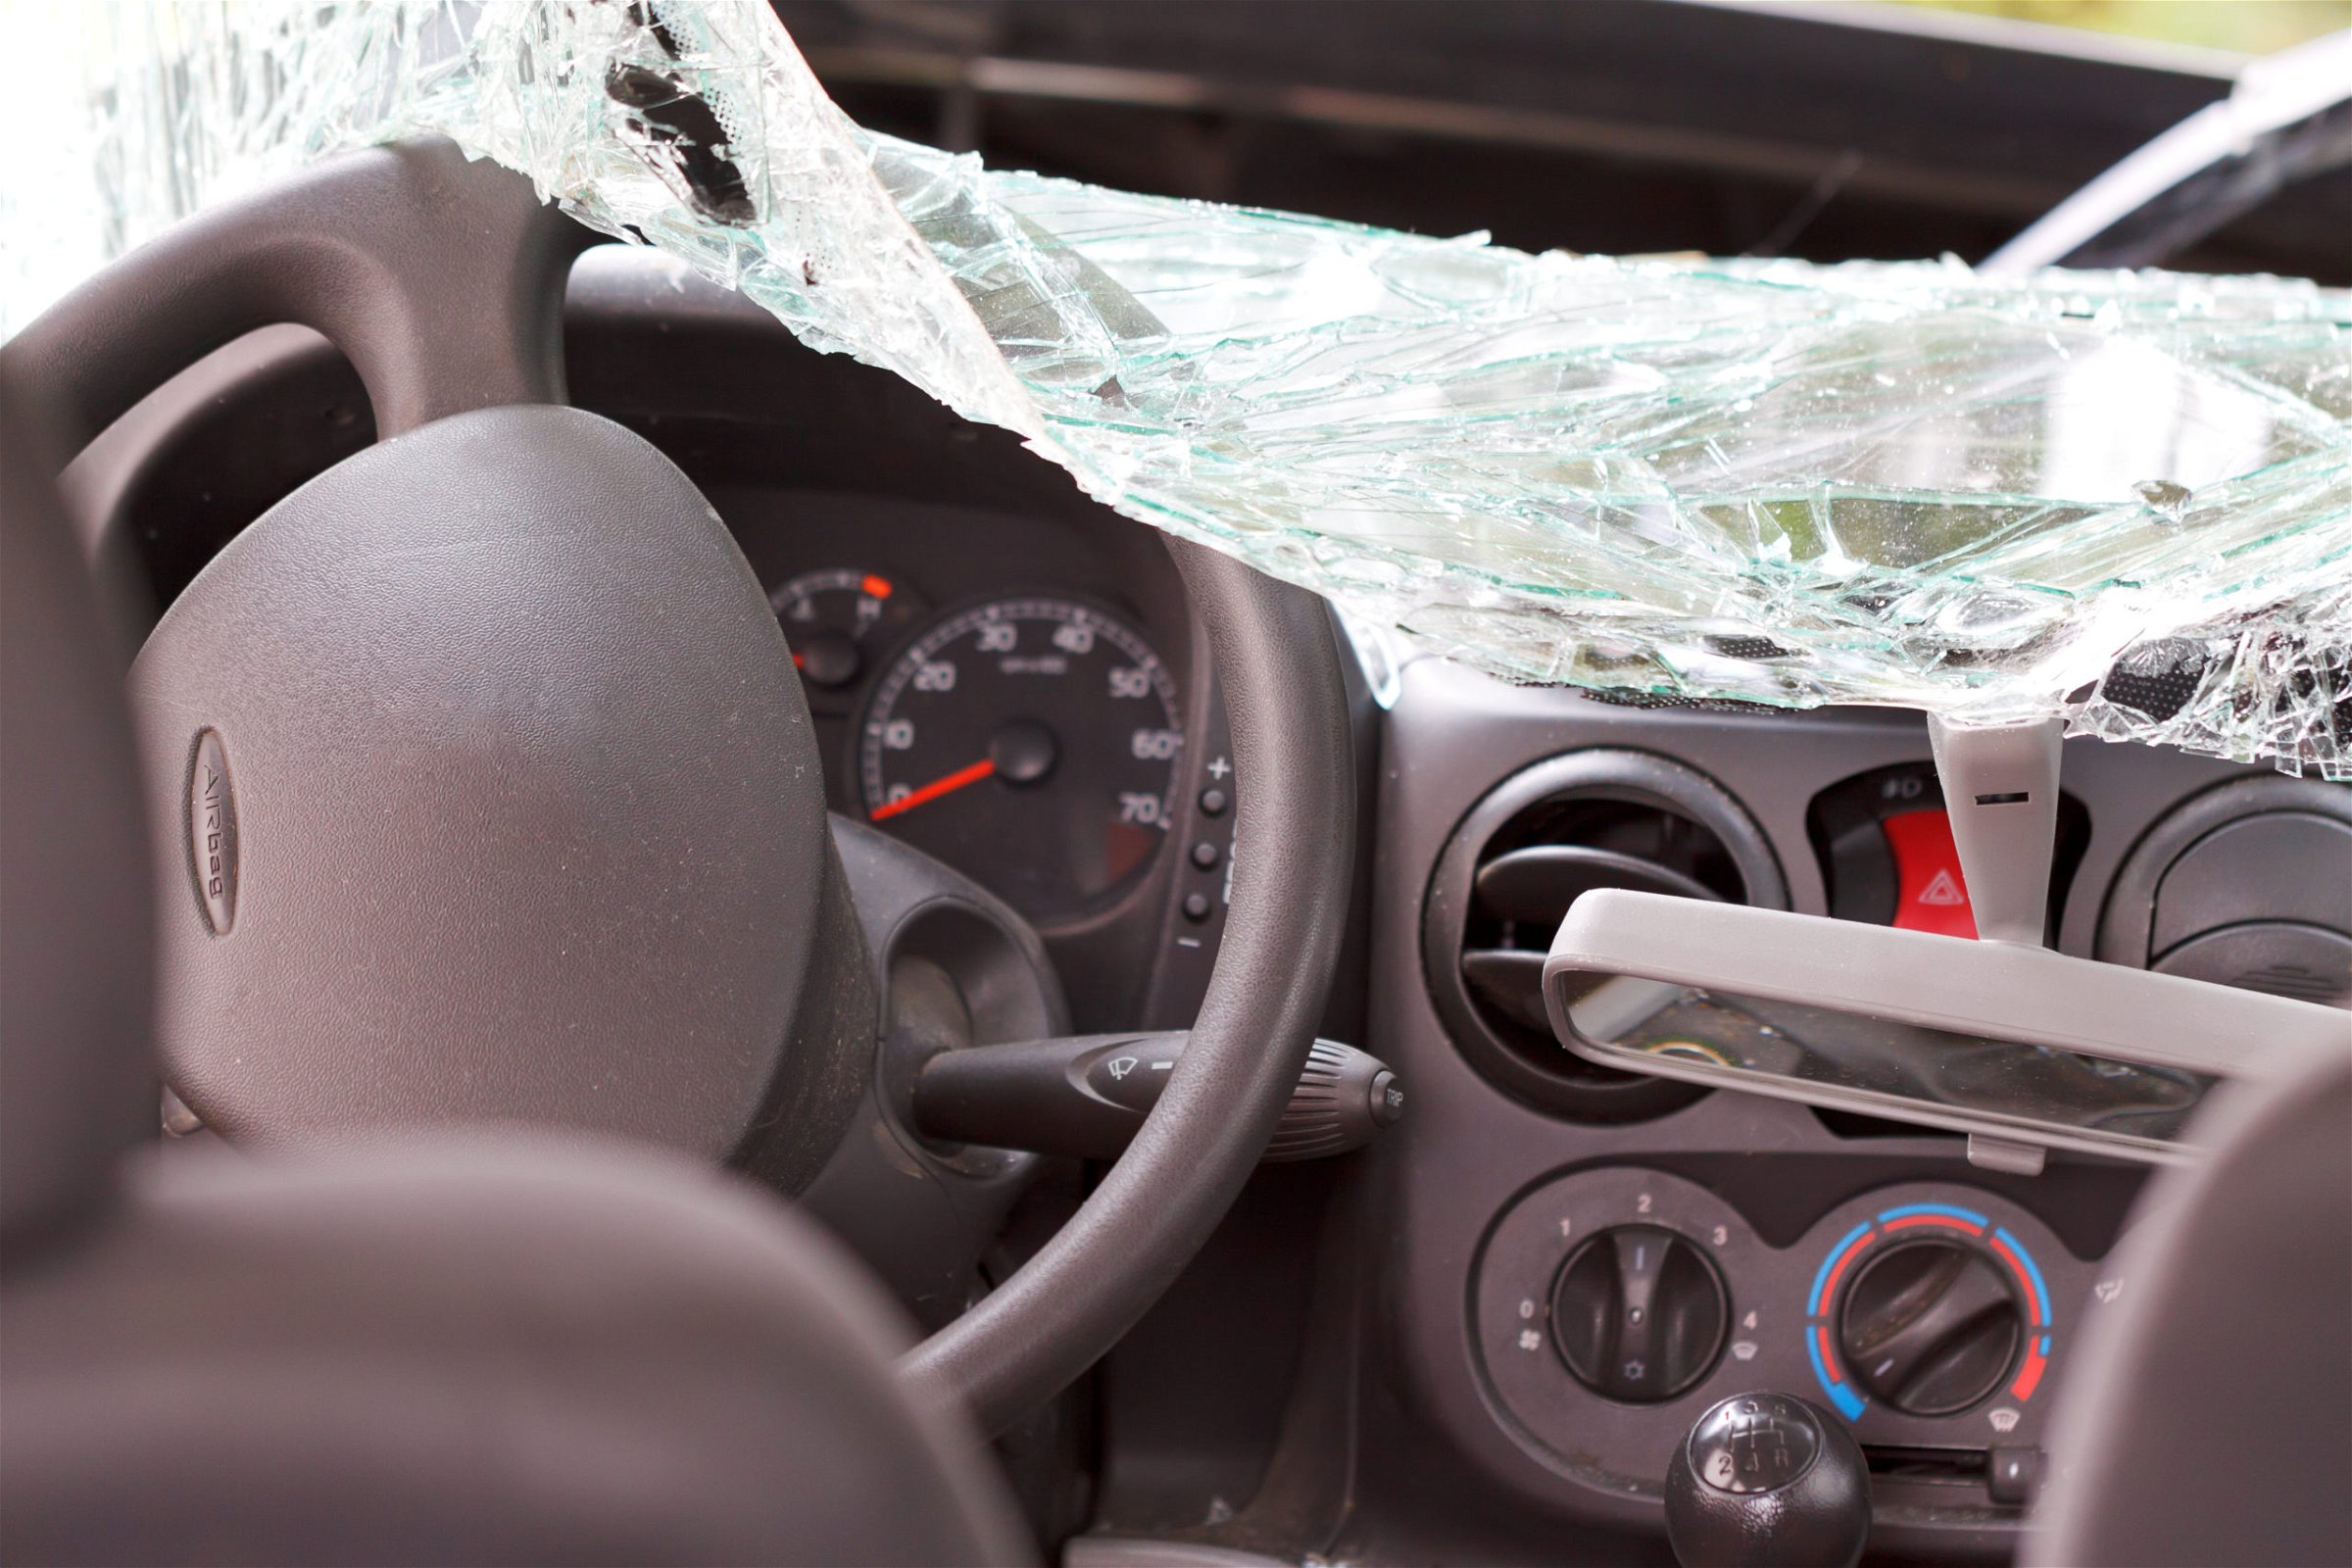 Resultado del choque frontal South Carolina | Atropello por conductor sin seguro suficiente Summerville, SC | Conductor negligente sin seguro